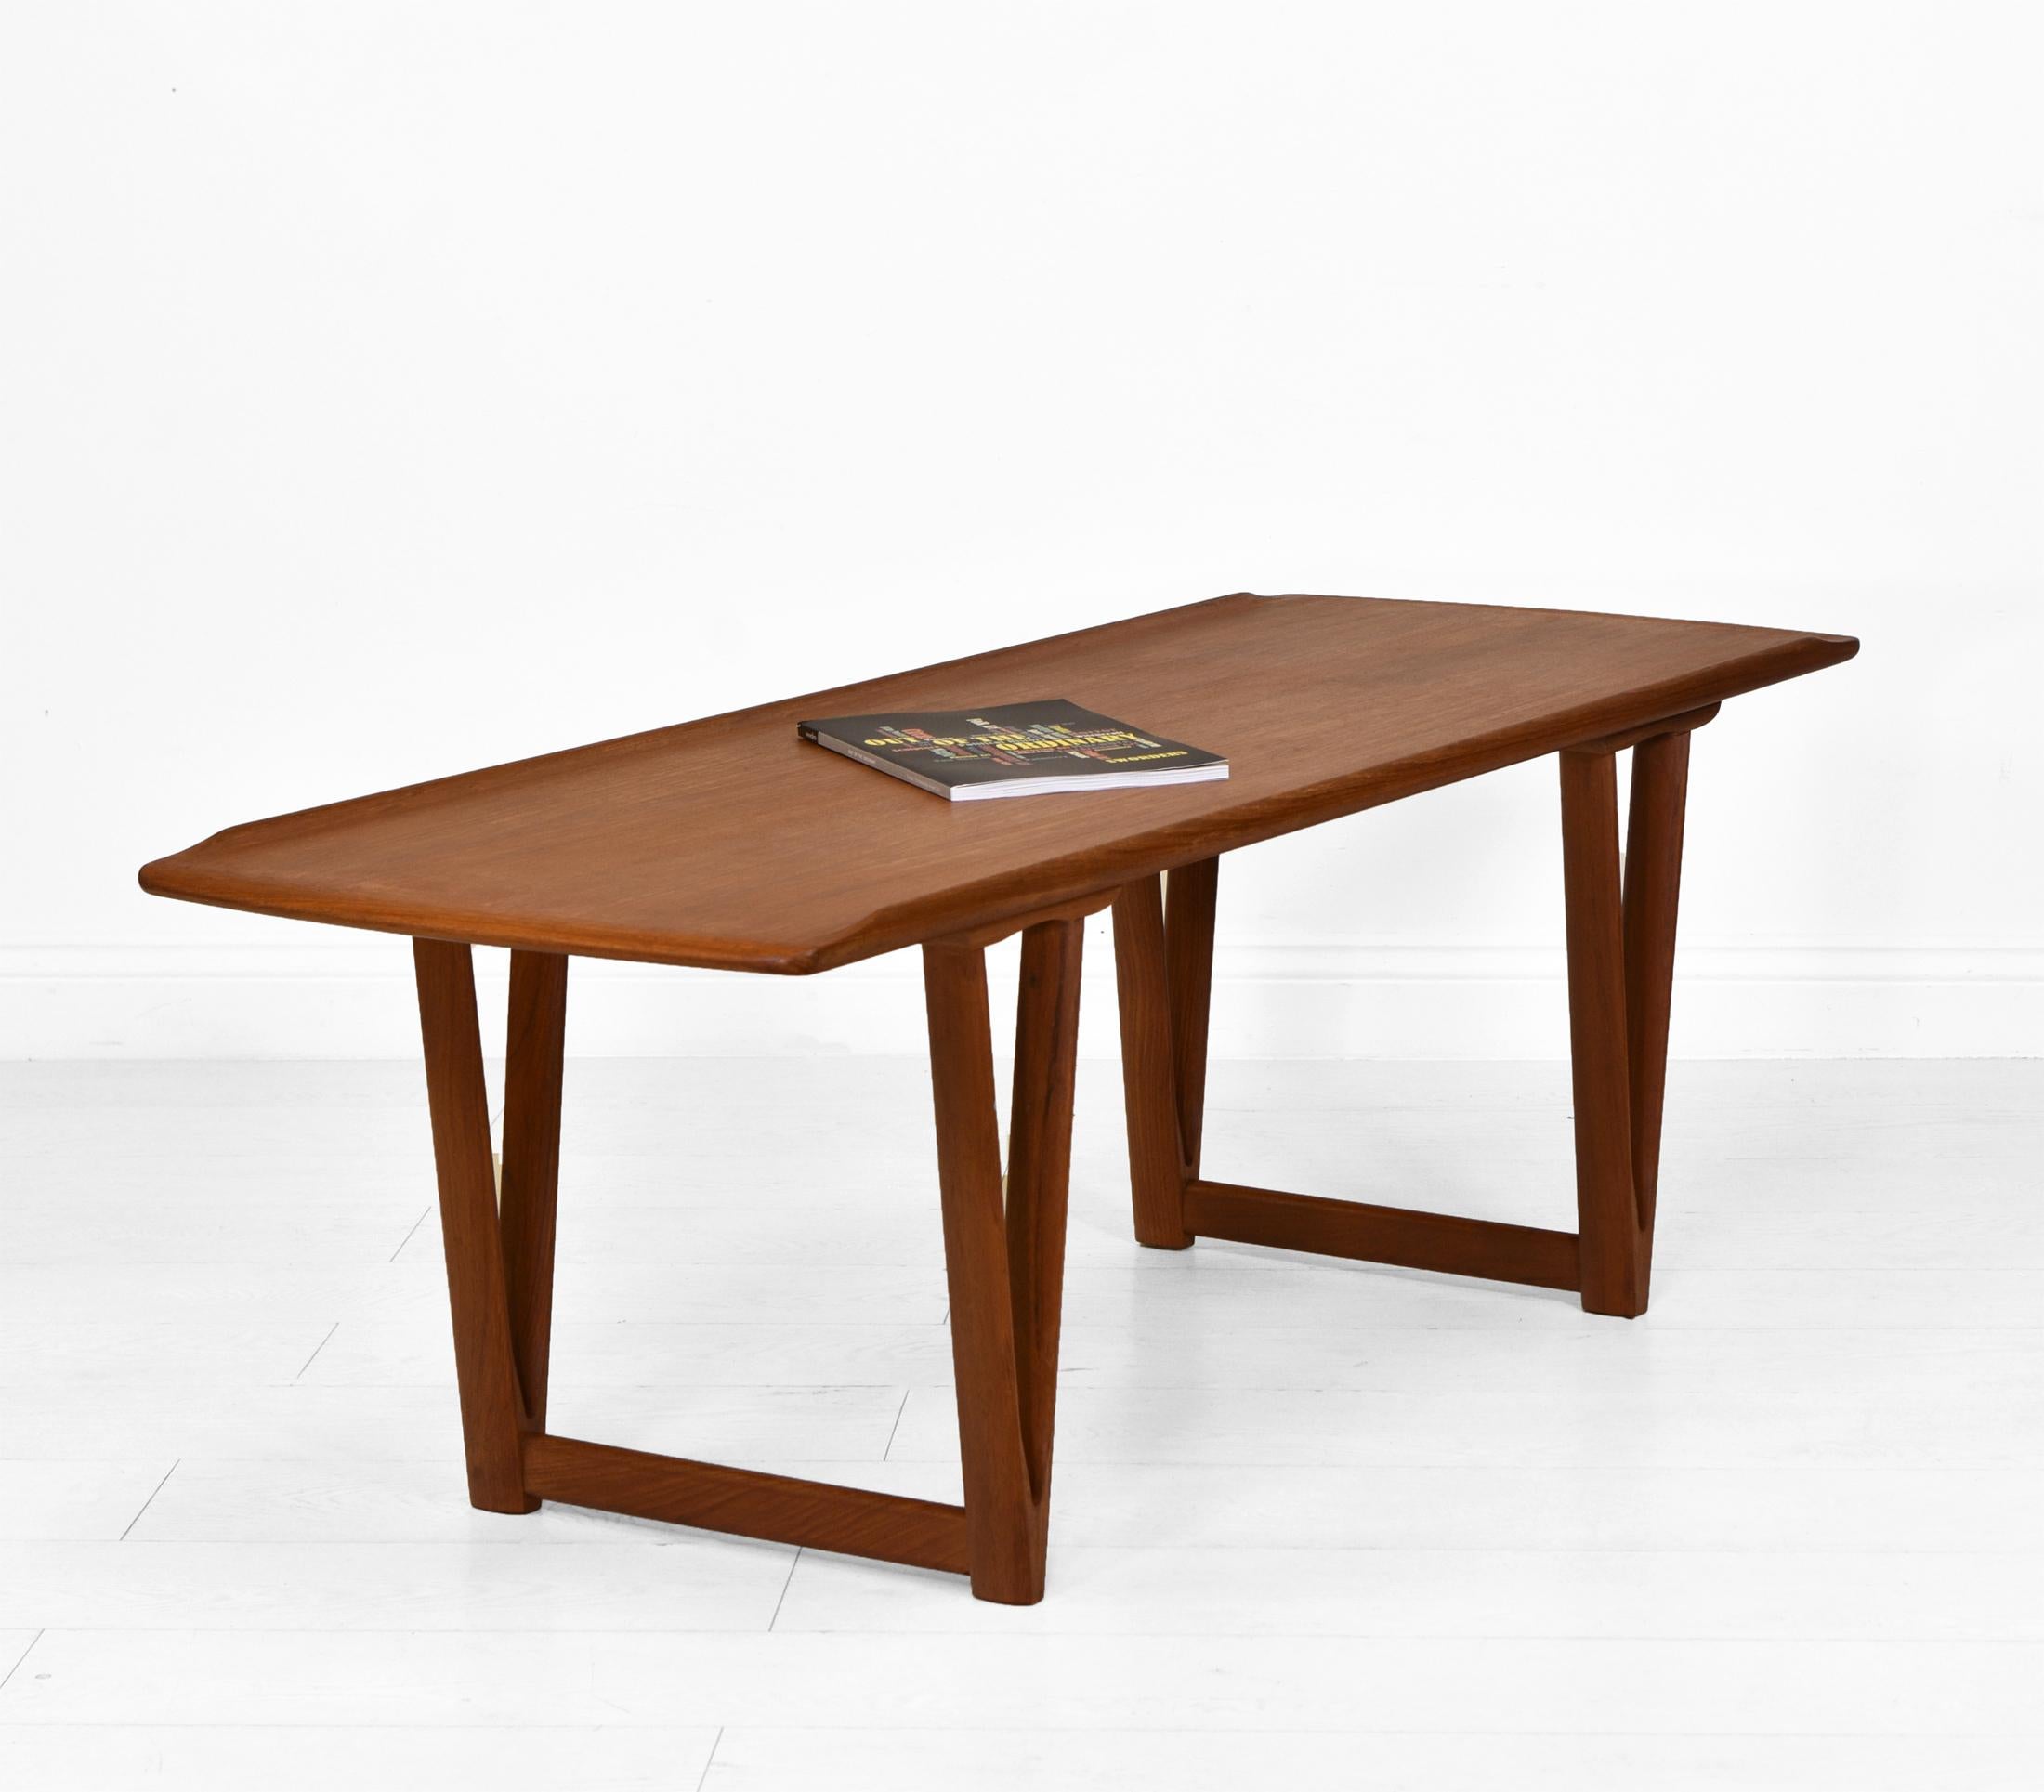 Table basse danoise en teck du milieu du siècle dernier, attribuée à Andreas Hansen. Circa 1960.

Cette table au design élégant repose sur des supports en forme de V et possède un bord supérieur en forme de lèvre.

Il est en très bon état pour